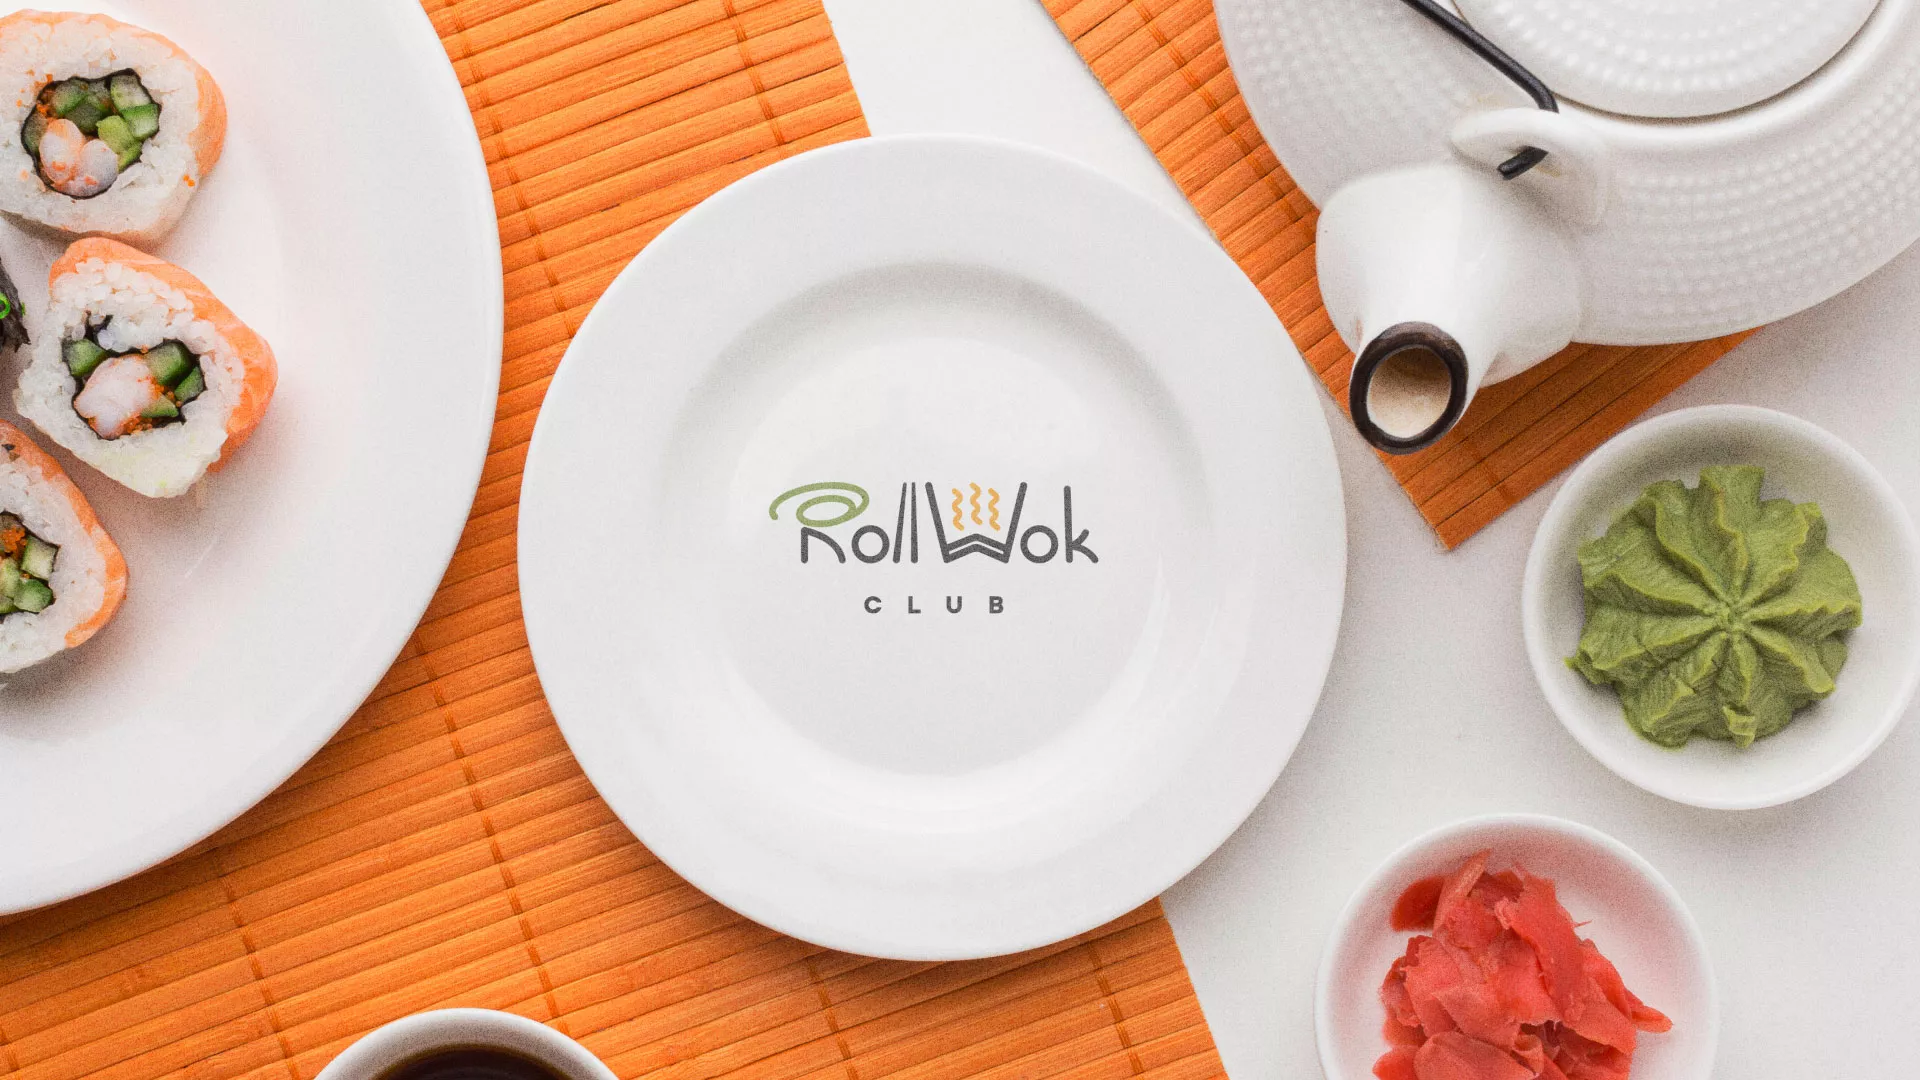 Разработка логотипа и фирменного стиля суши-бара «Roll Wok Club» в Мариинском Посаде